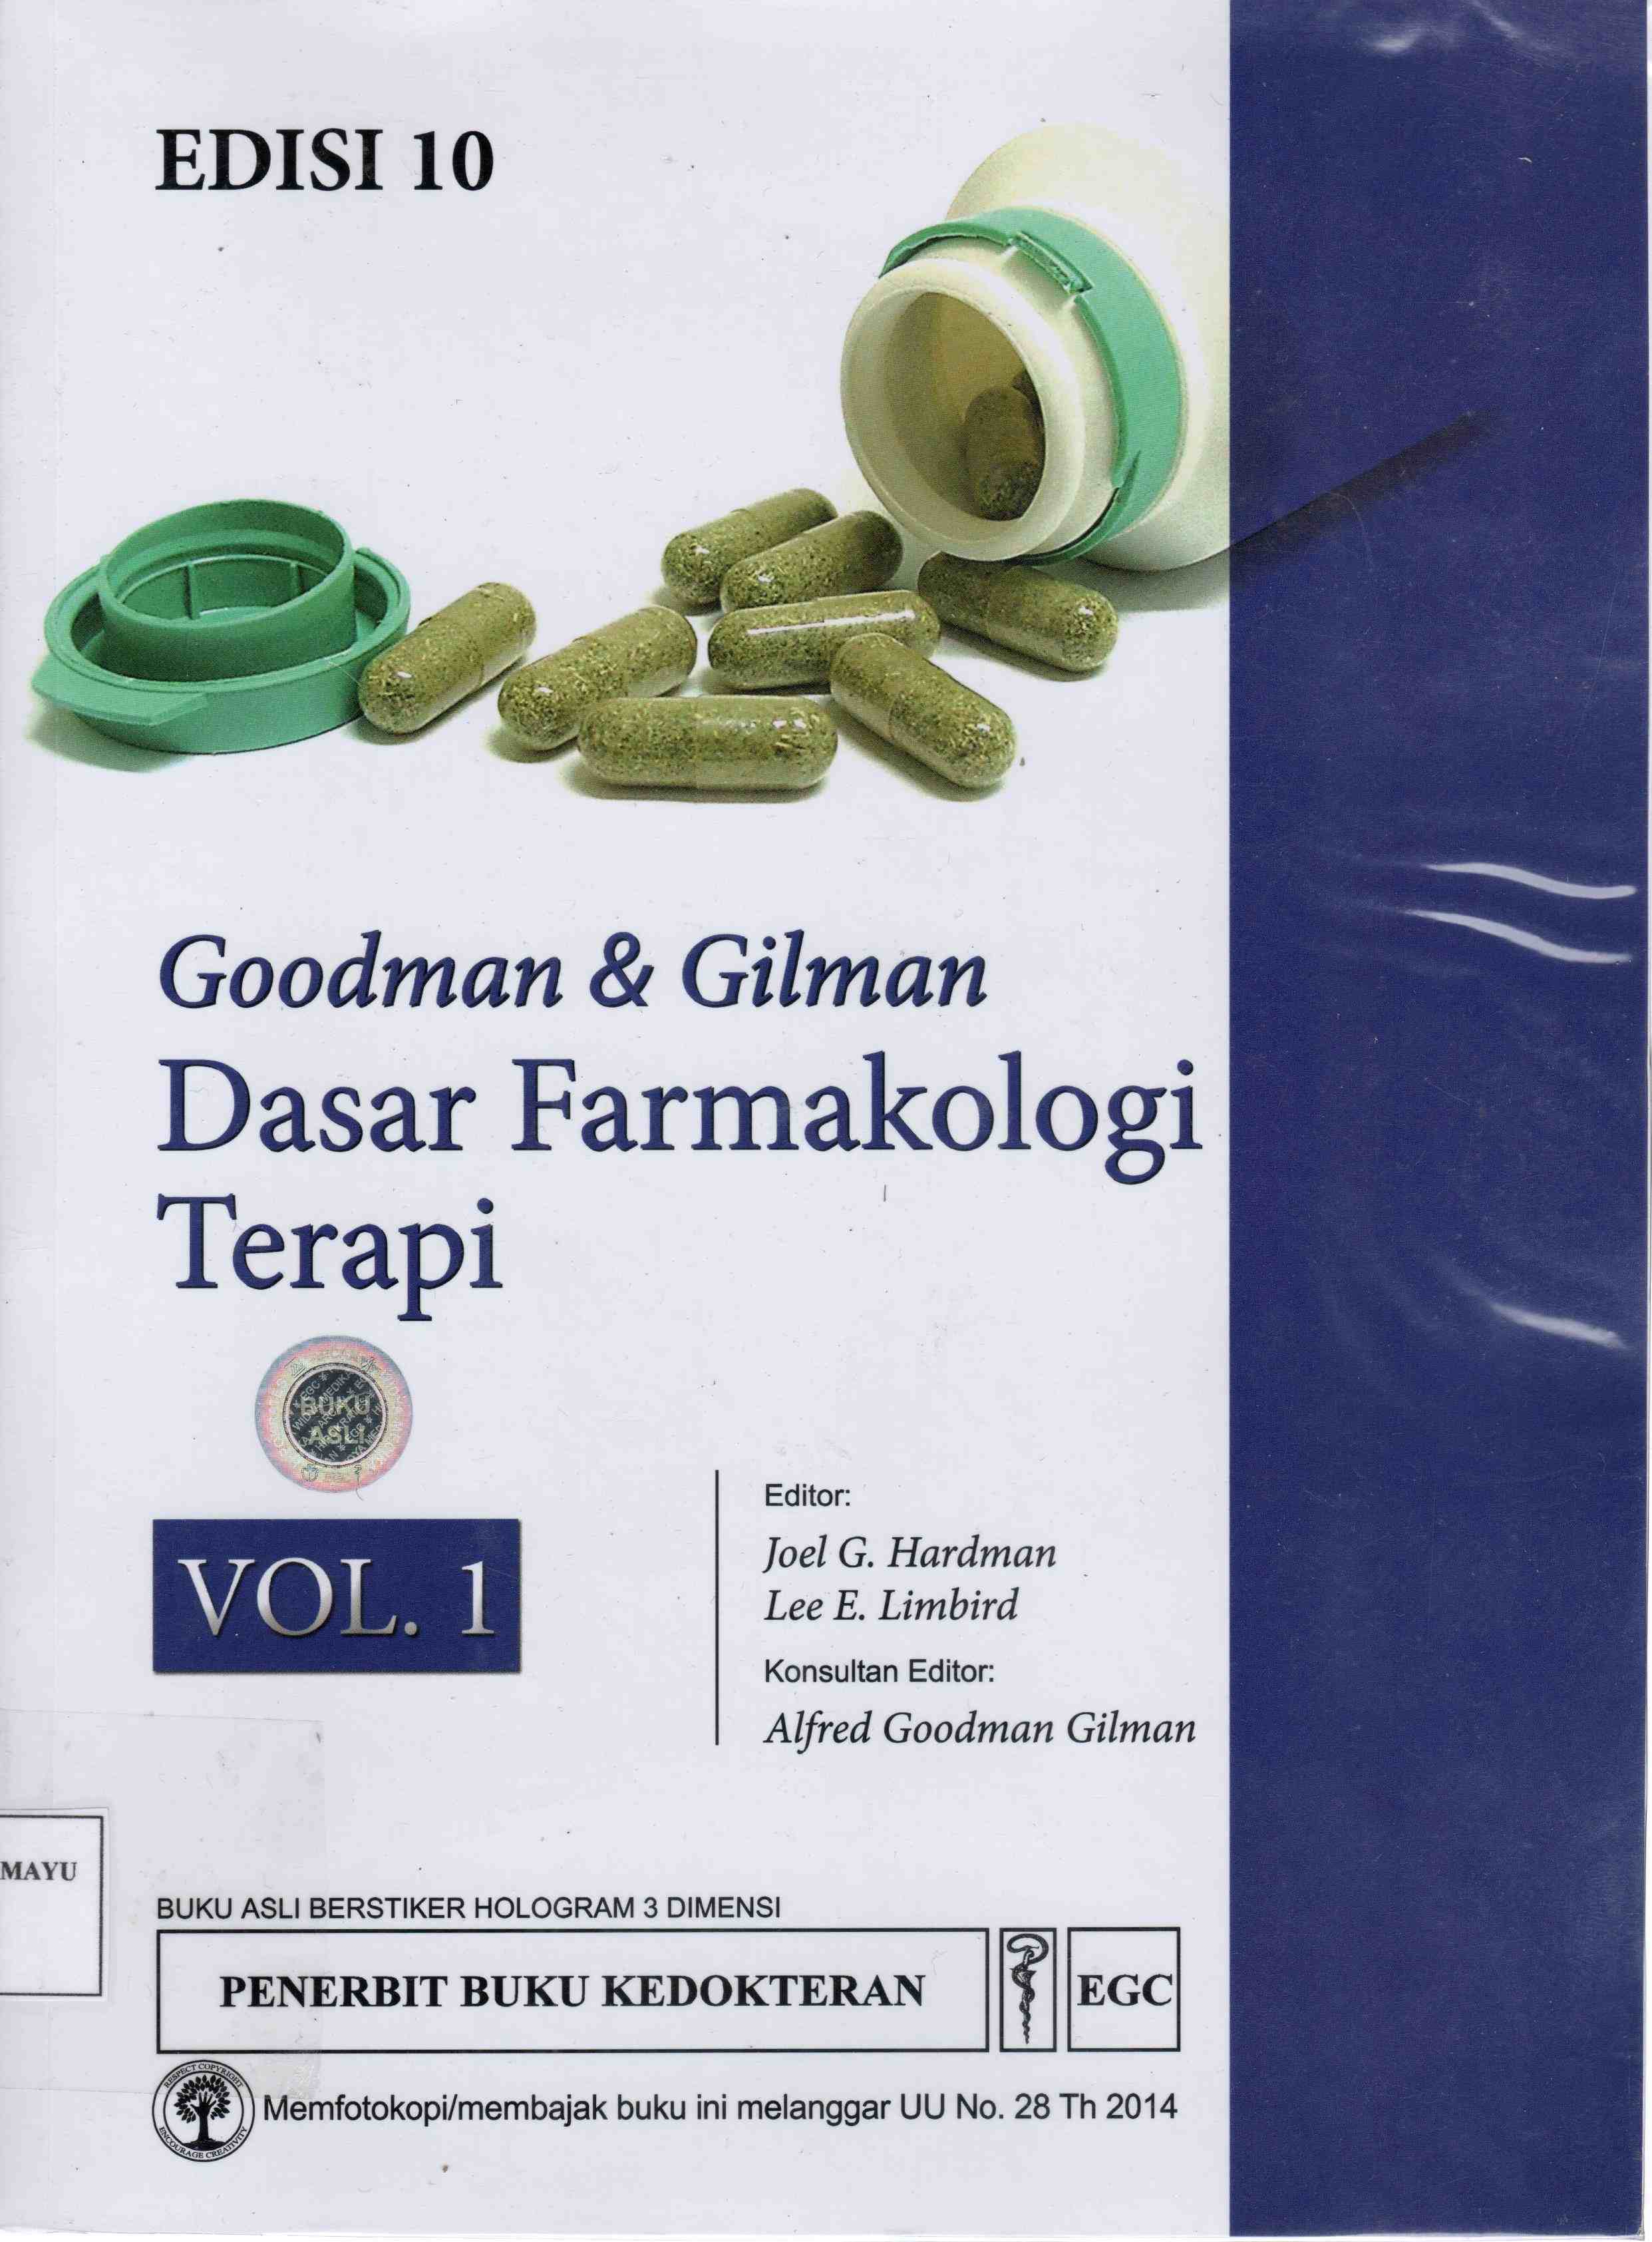 Goodman & Gilman : Dasar Farmakologi Terapi Vol 1 ED.10